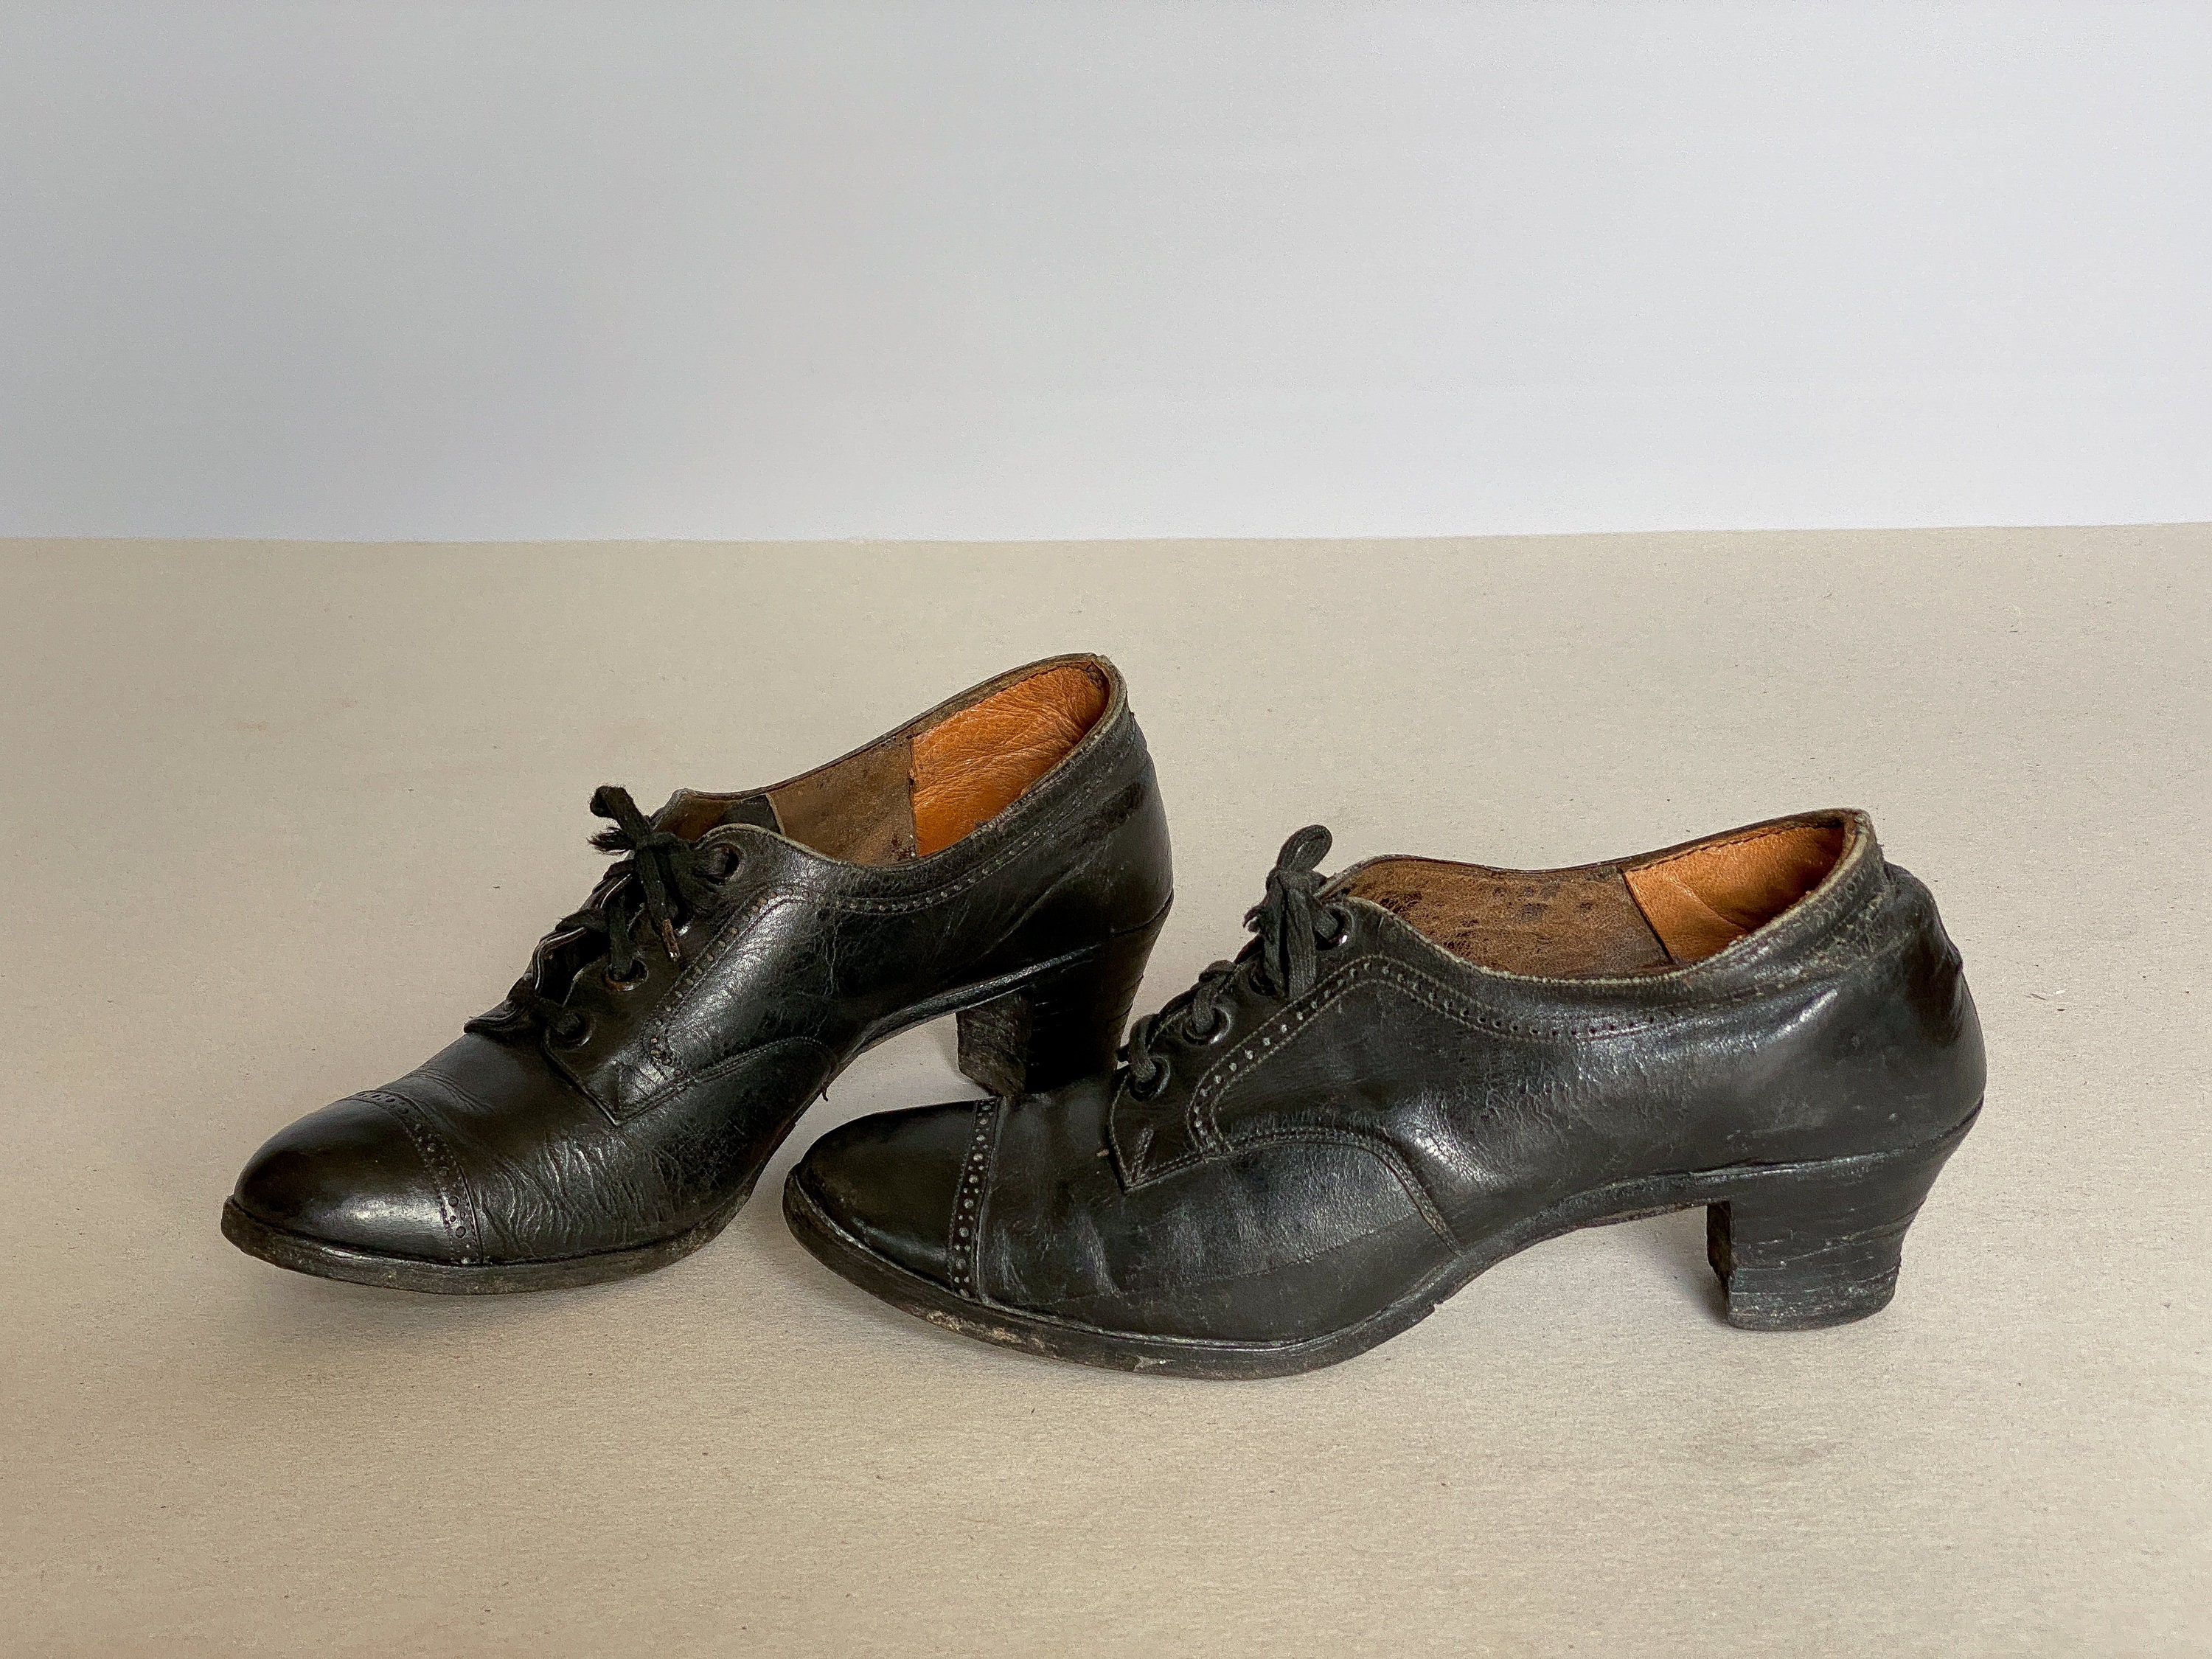 Comprar zapatos charleston anos 20 🥇 【 desde 6.99 € 】